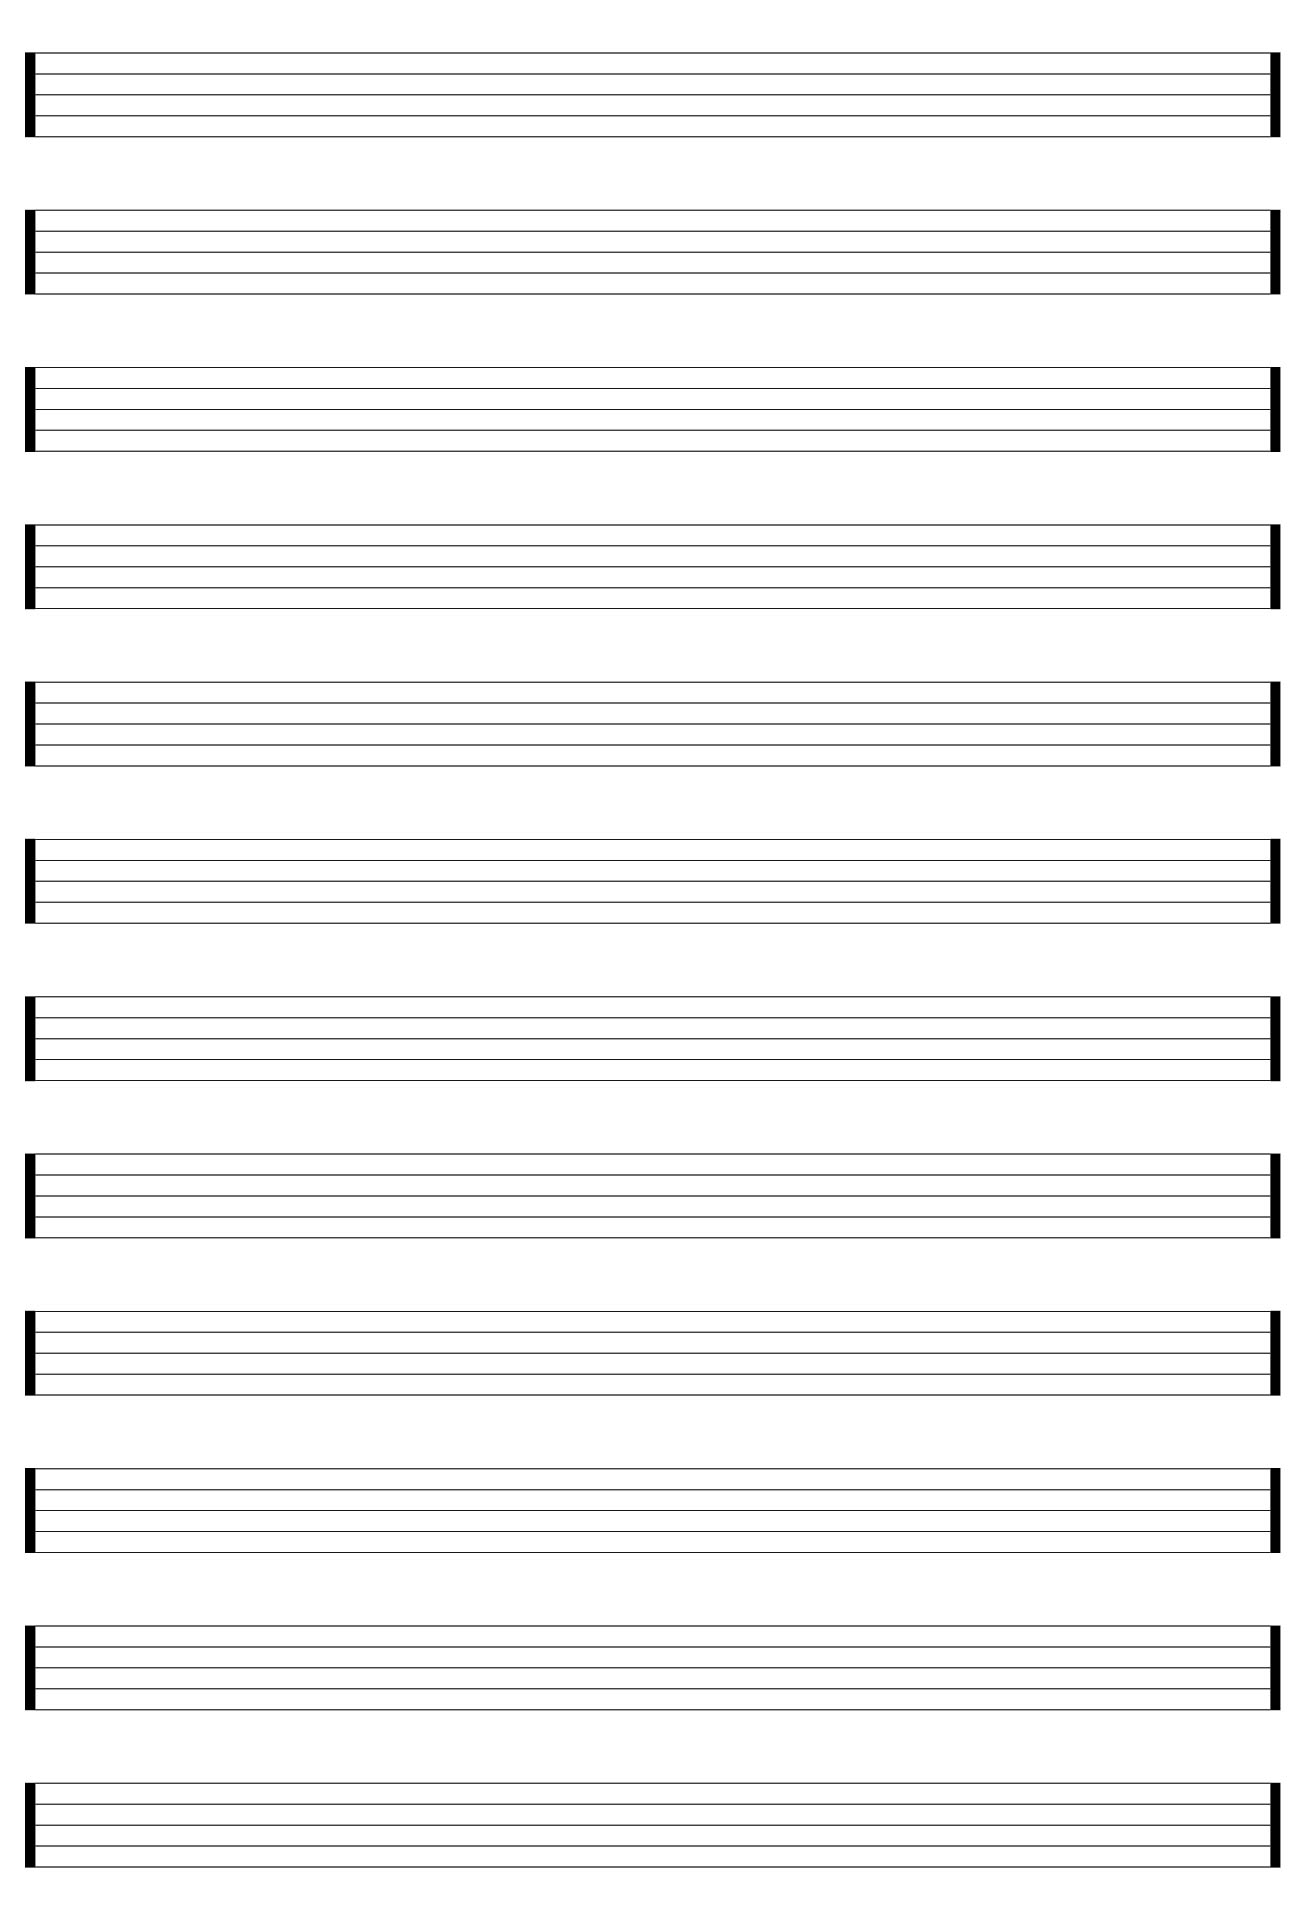 blank music sheet notebook music manuscript paper